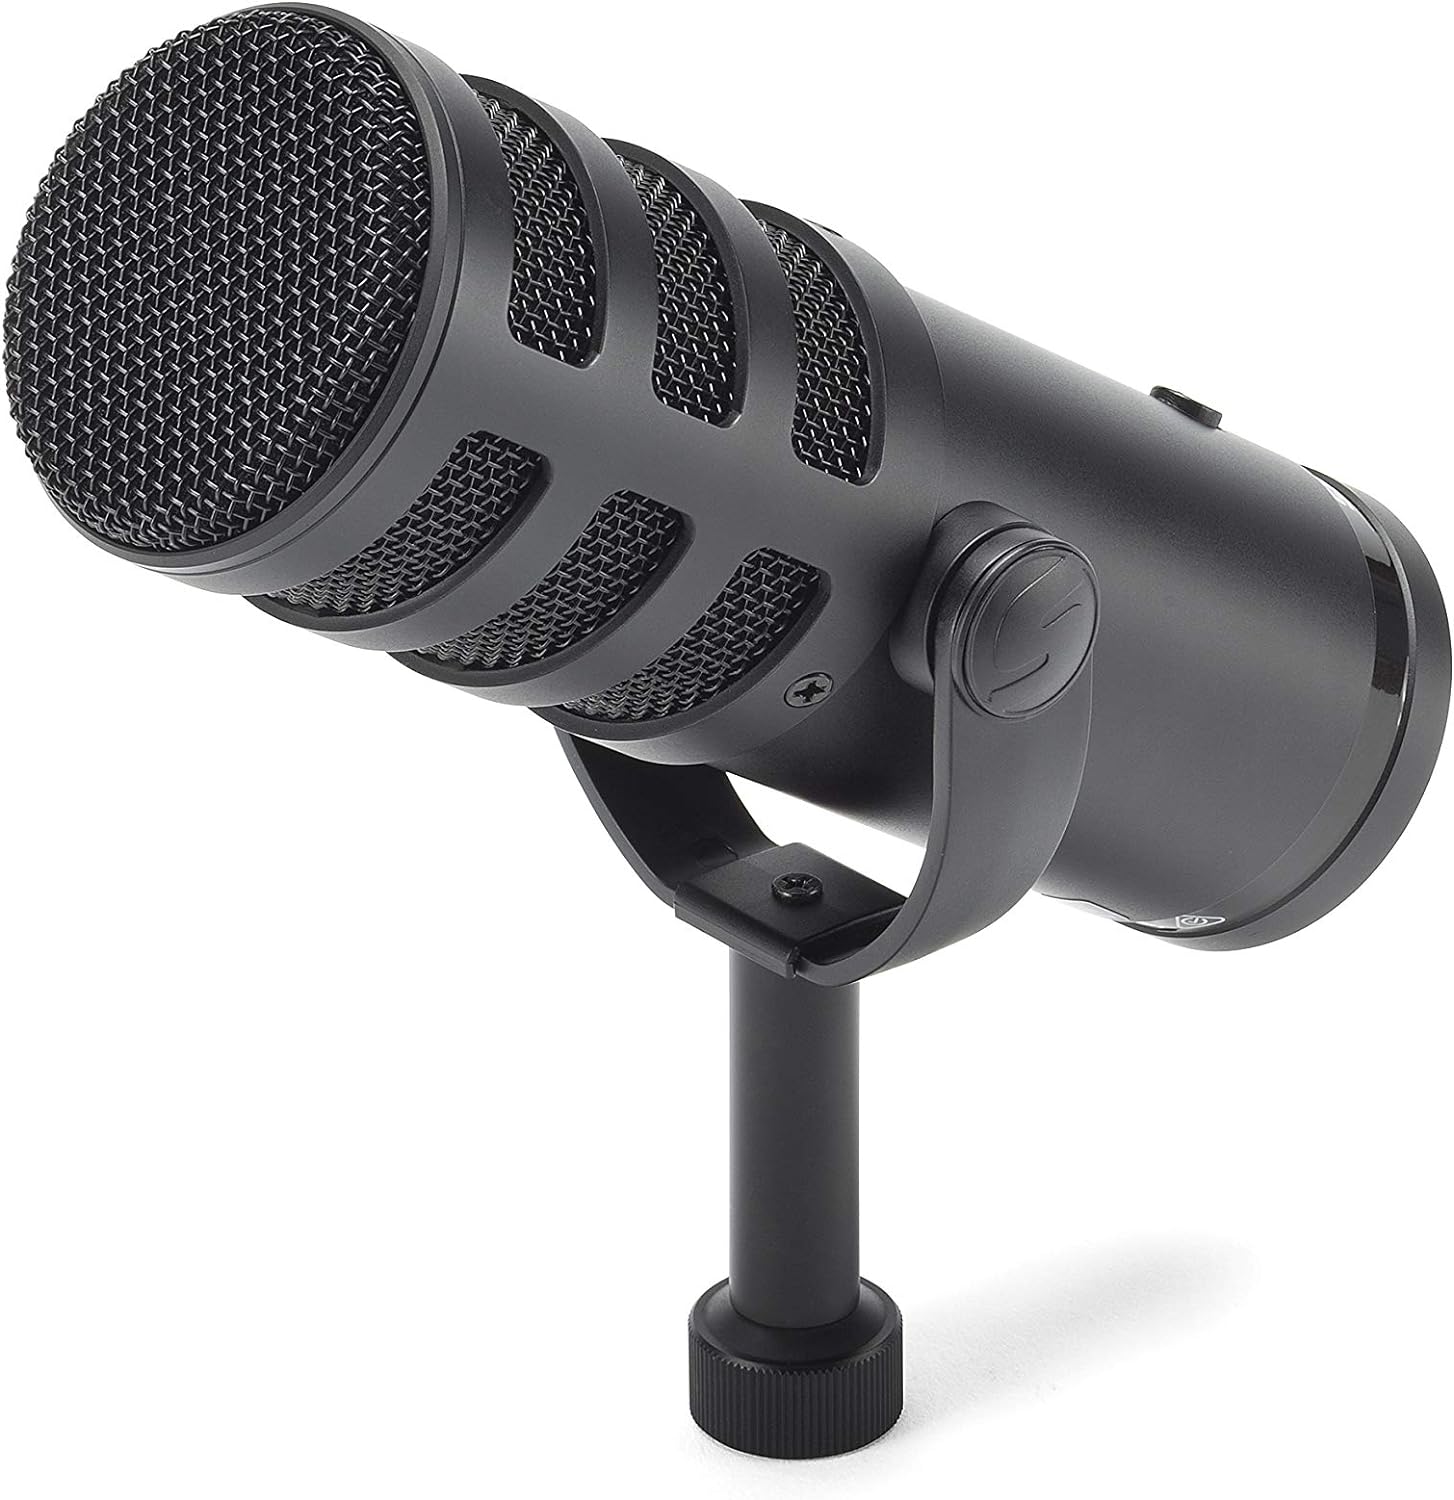 Samson Q9U XLR / USB Dynamic Broadcast Microphone